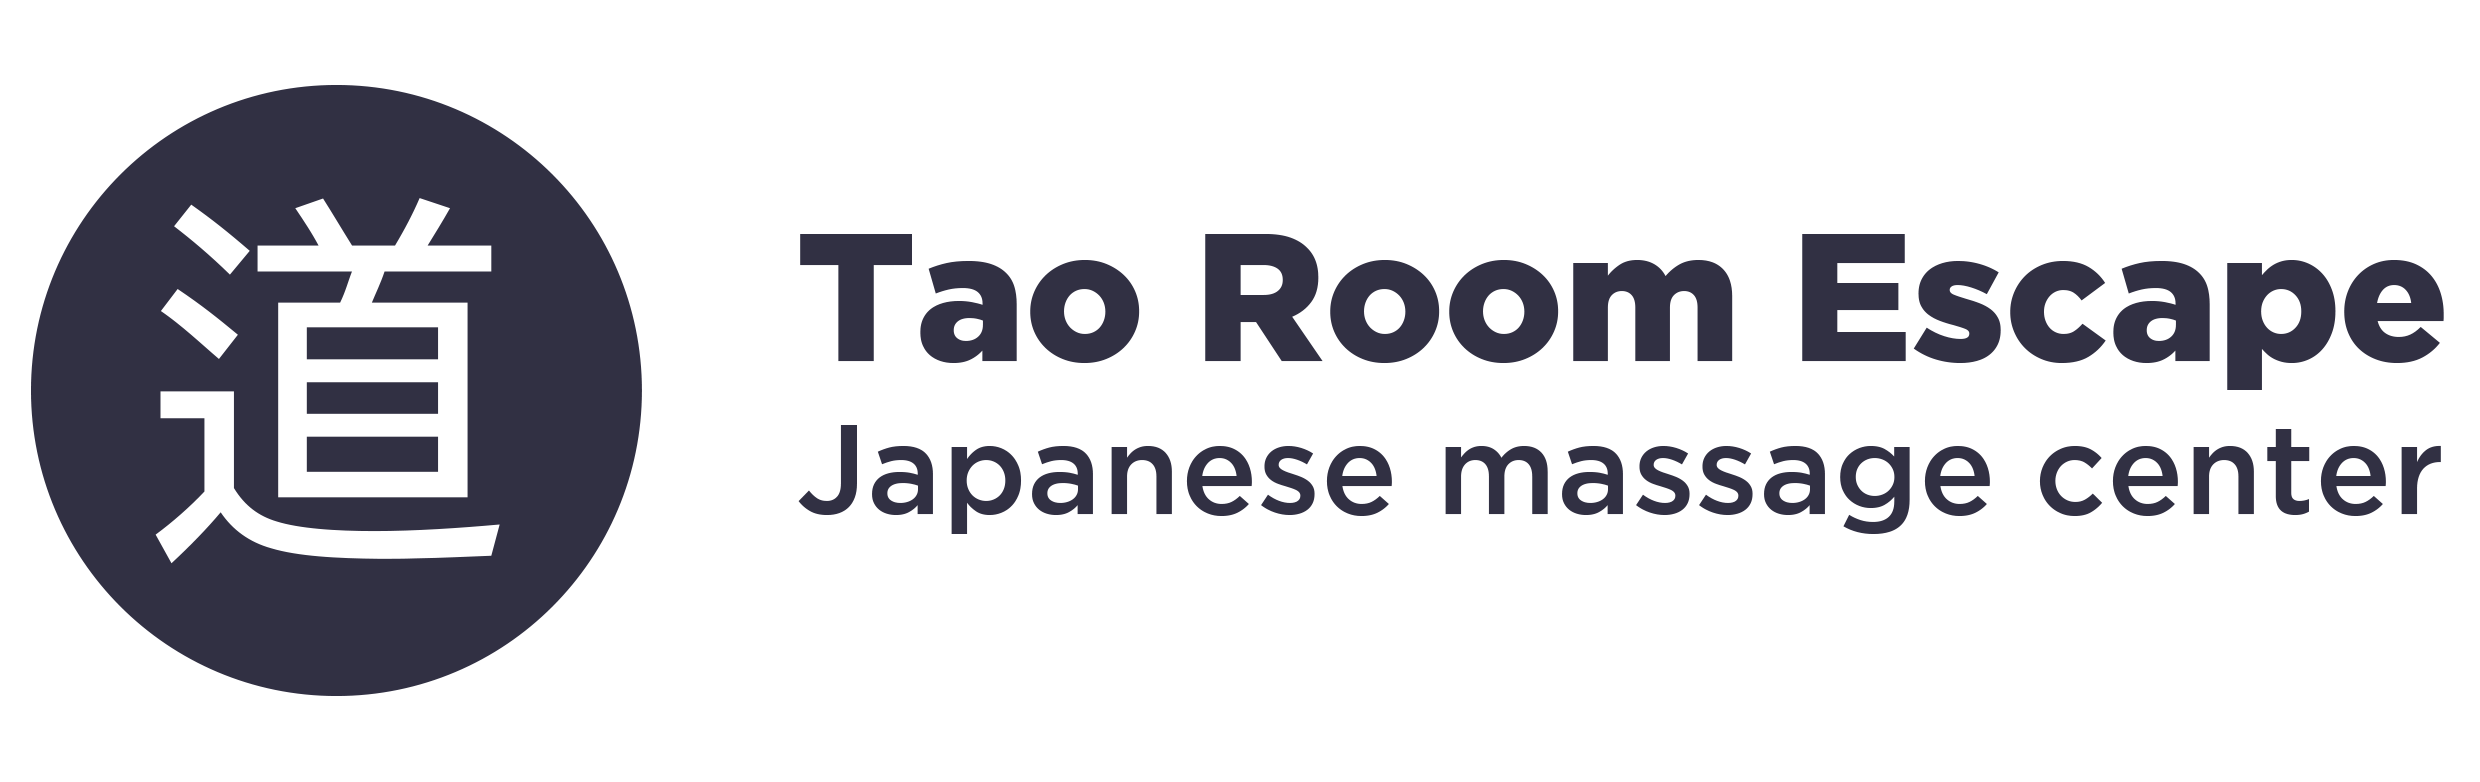 Logo Tao Room Escape azul